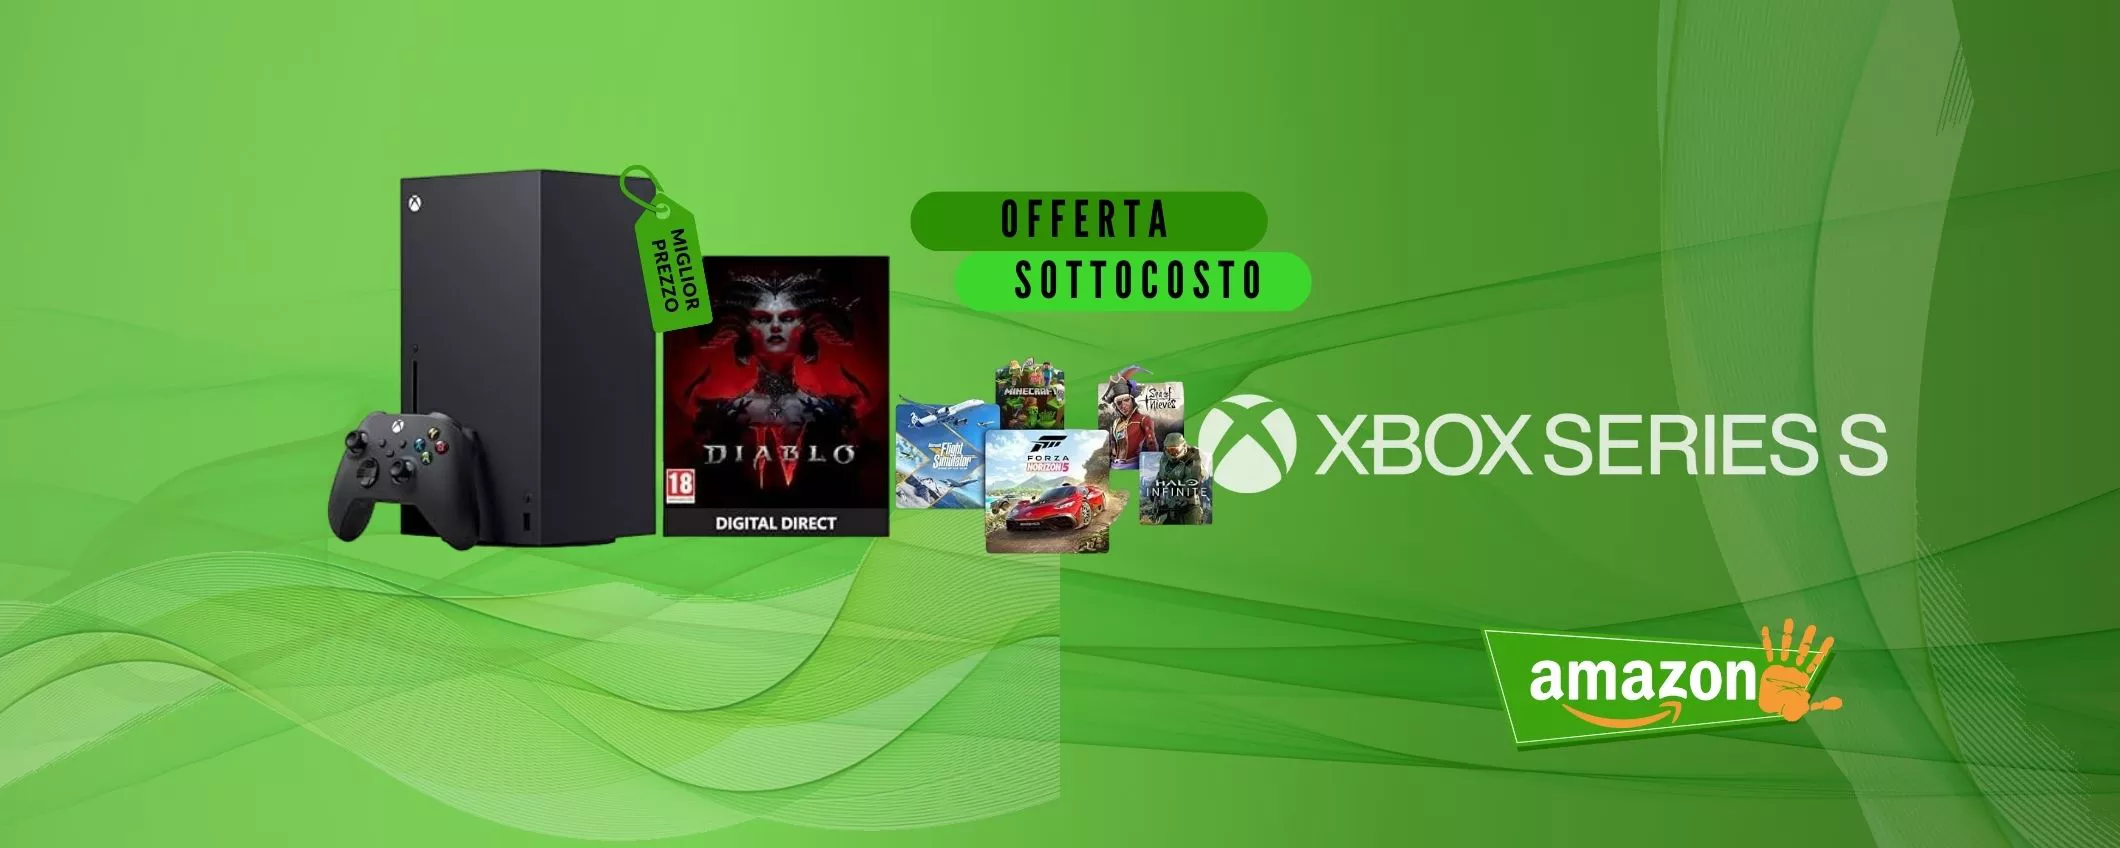 Xbox Series X con Diablo IV e Game Pass Ultimate gratis per 3 Mesi a -135€